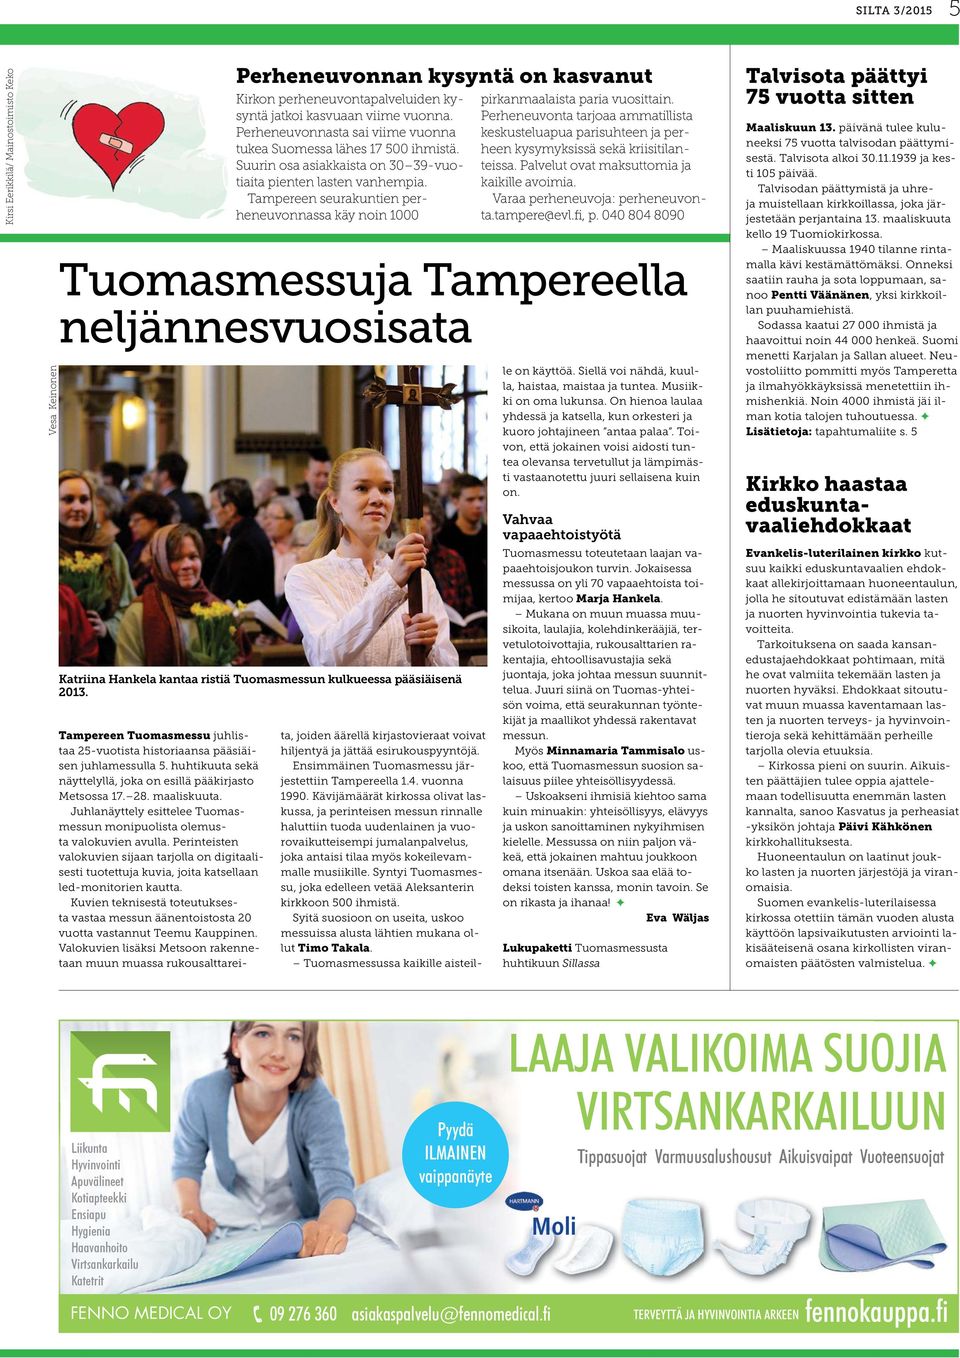 Tampereen seurakuntien perheneuvonnassa käy noin 1000 pirkanmaalaista paria vuosittain. Perheneuvonta tarjoaa ammatillista keskusteluapua parisuhteen ja perheen kysymyksissä sekä kriisitilanteissa.